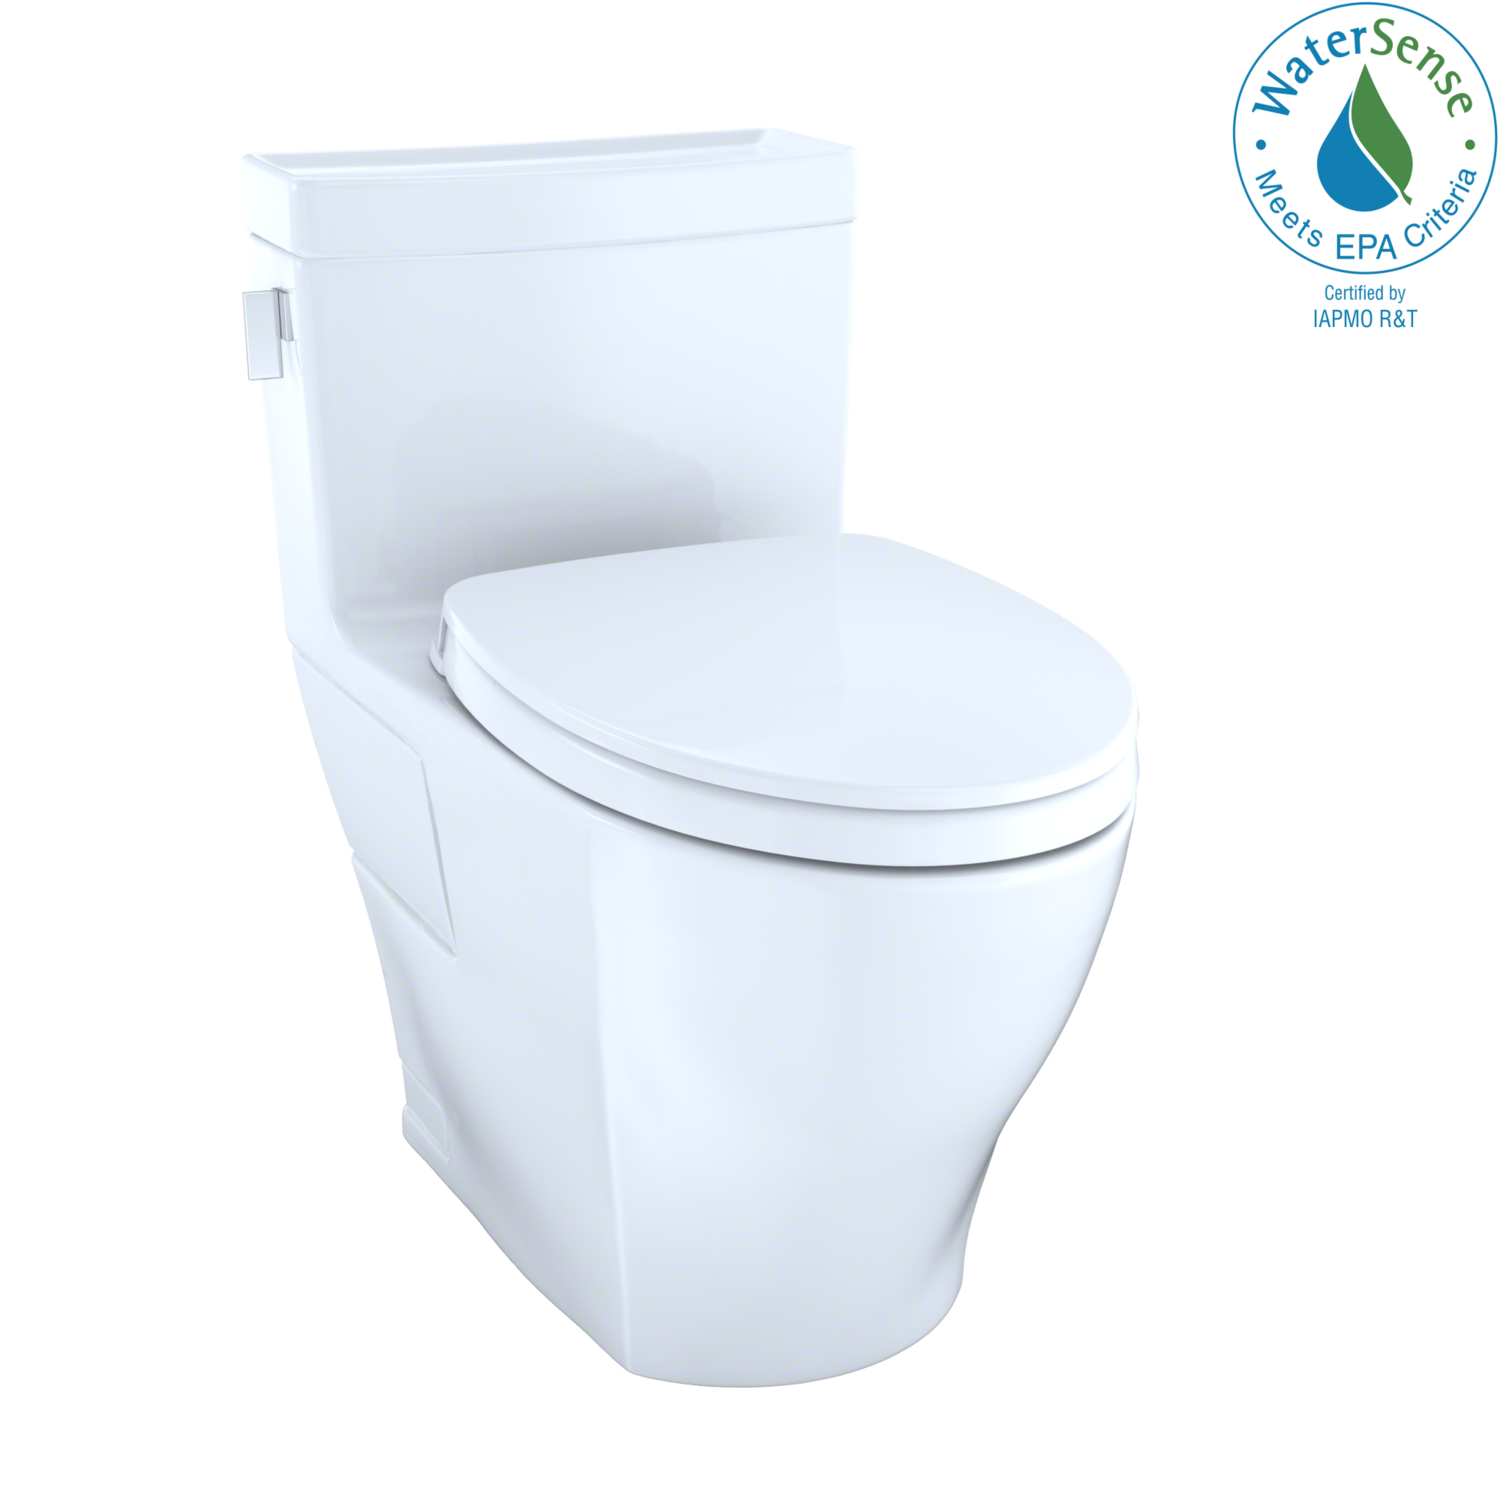 TOTO - Legato® One-Piece High-Efficiency Toilet, 1.28 GPF, Cotton White MS624124CEFG#01